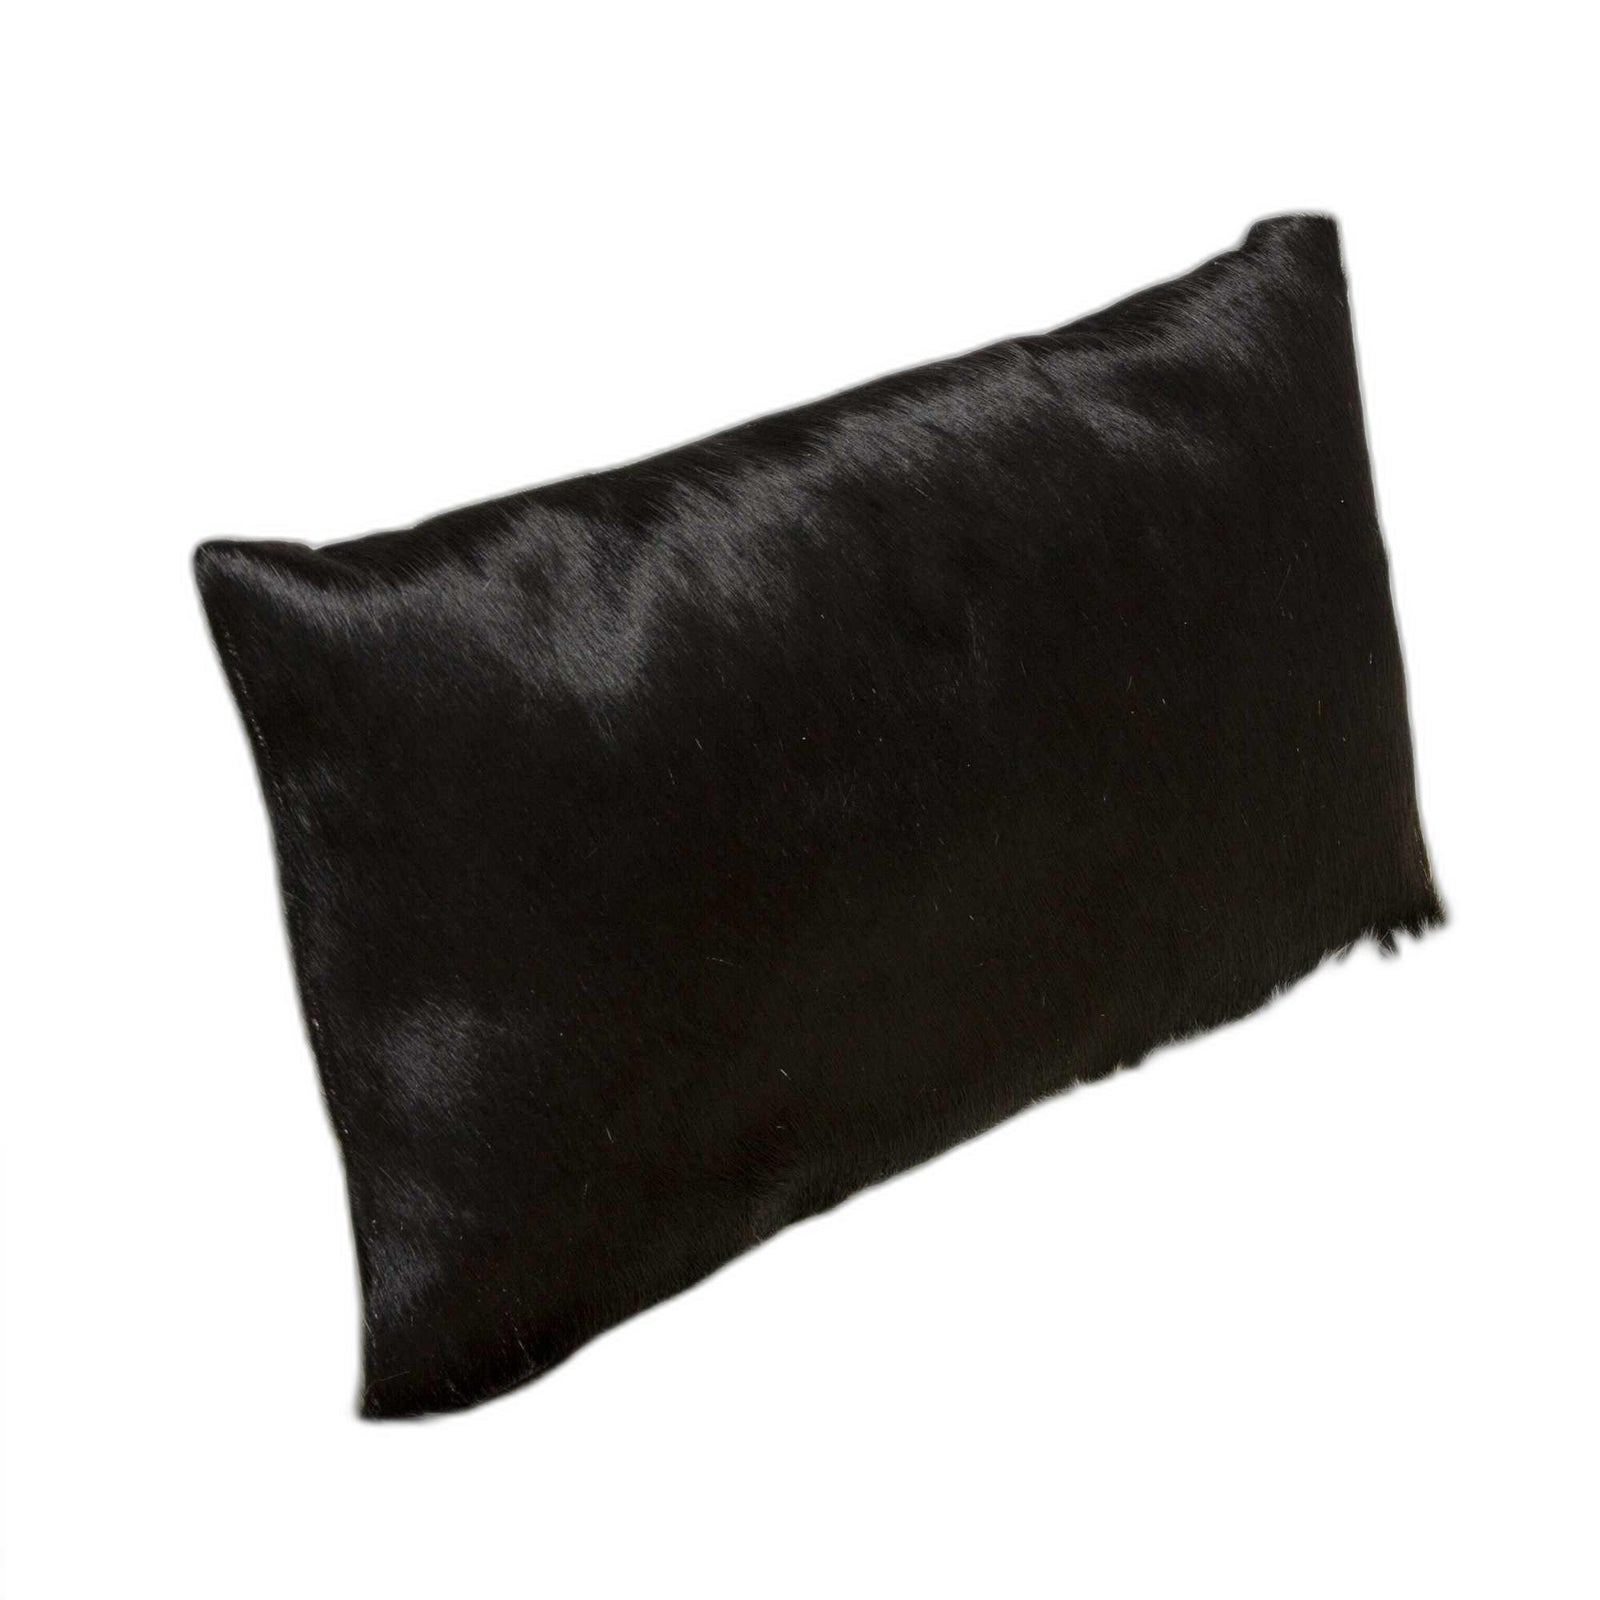 Black Cowhide Pillow - 12" x 20" x 5"